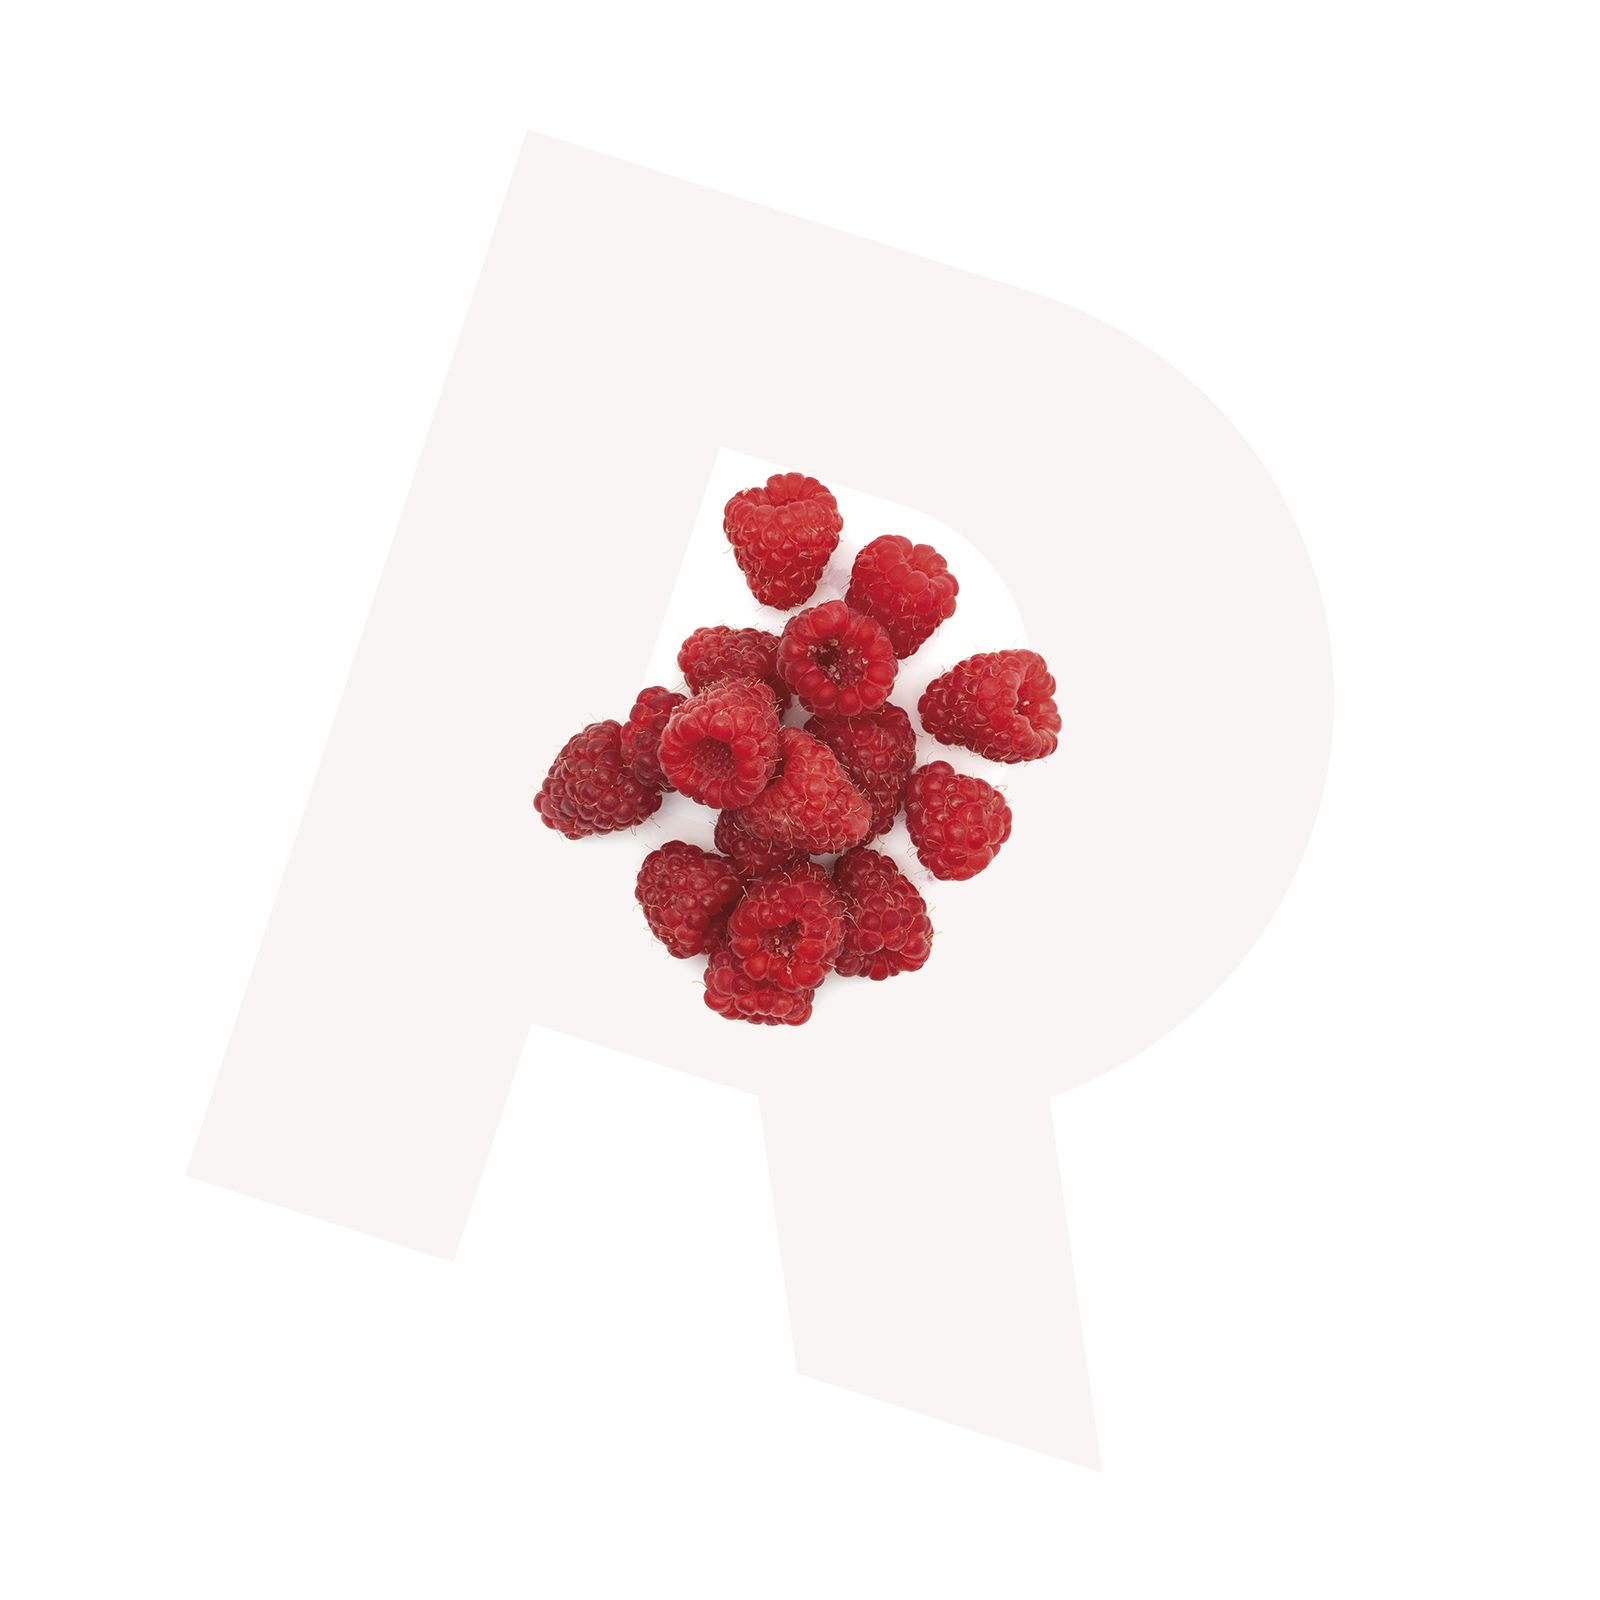 Fruit_raspberries